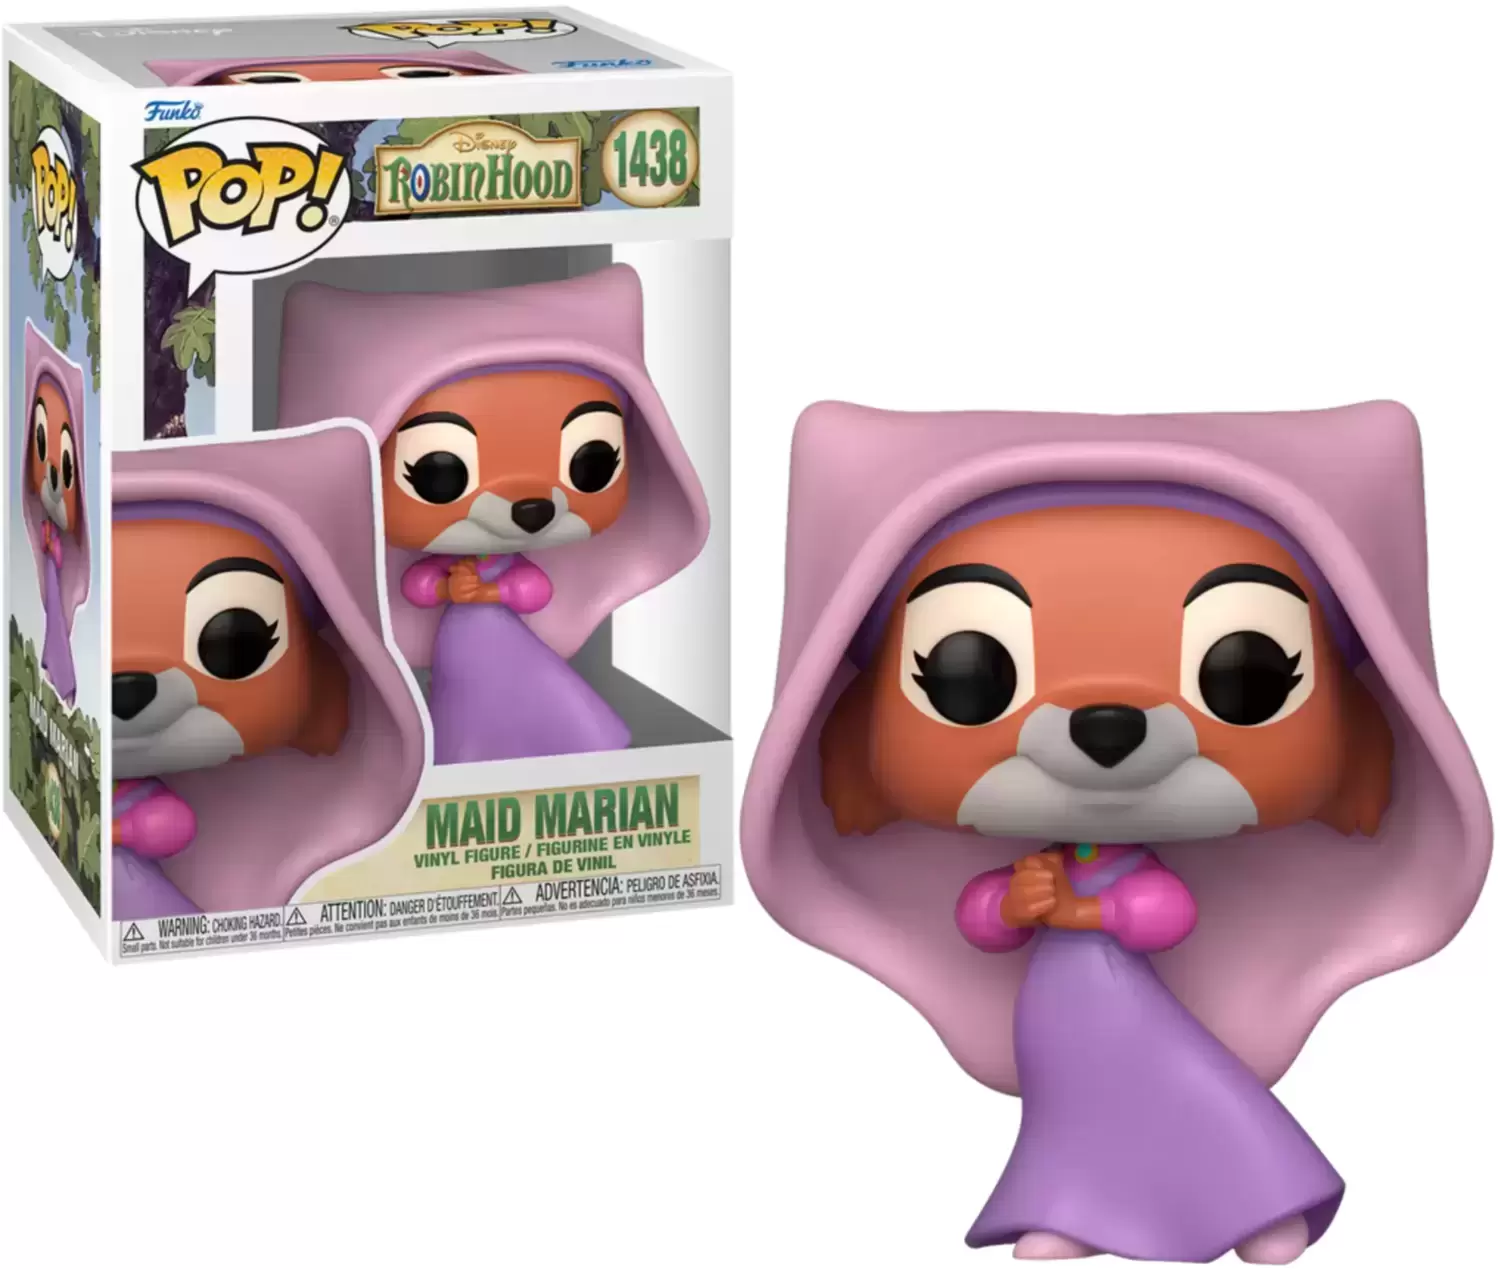 POP! Disney - Robin Hood - Maid Marian